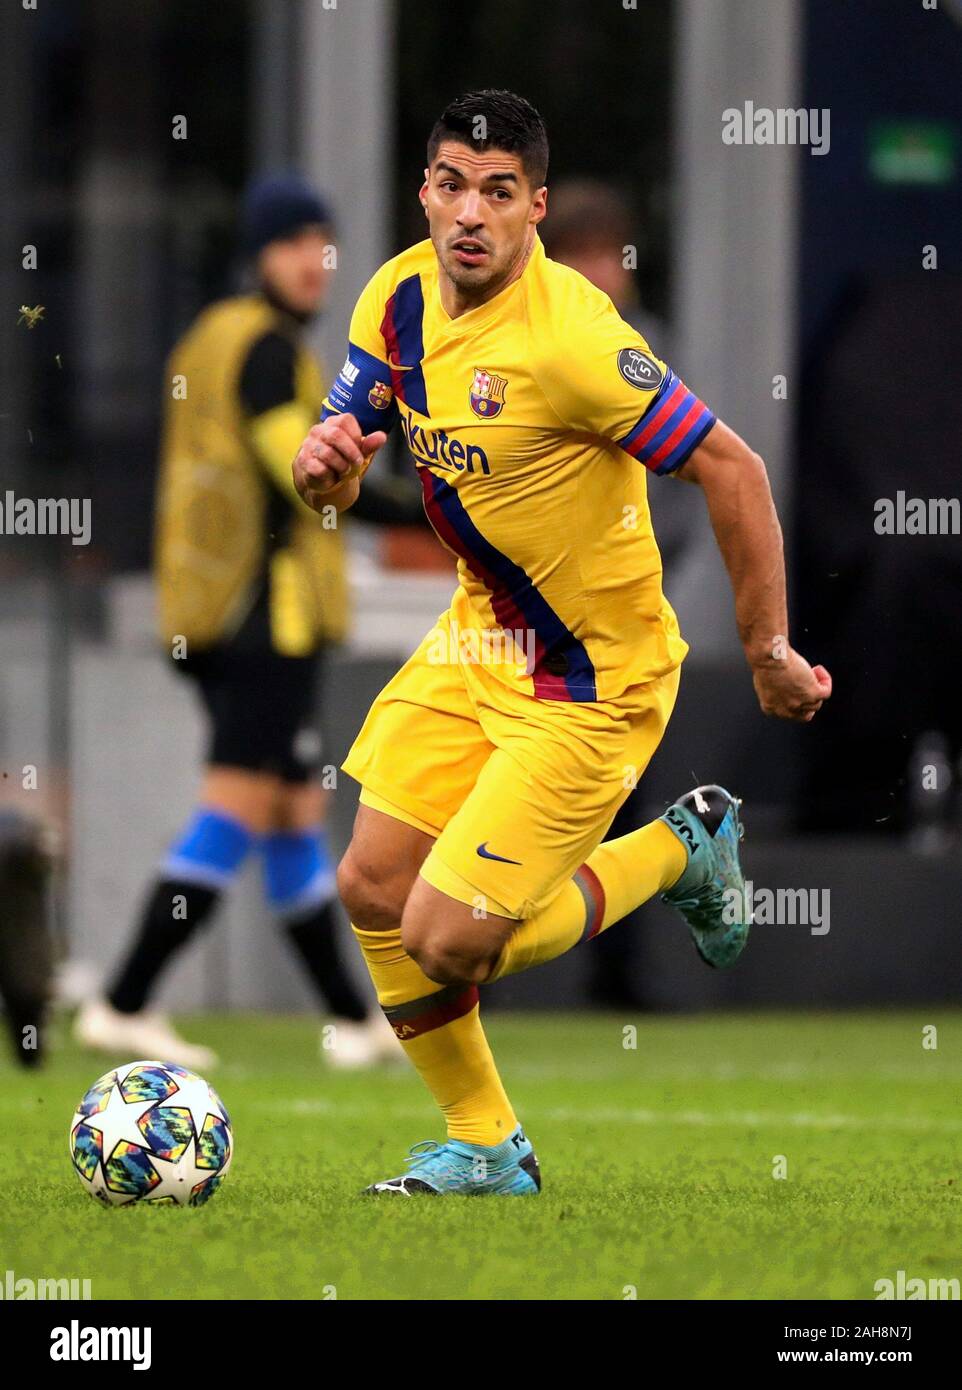 Milan, ITALIE - 10 décembre 2019: Luis Suarez en action pendant la Ligue des Champions de l'UEFA 2019/2020 INTER / BARCELONE au stade San Siro. Banque D'Images